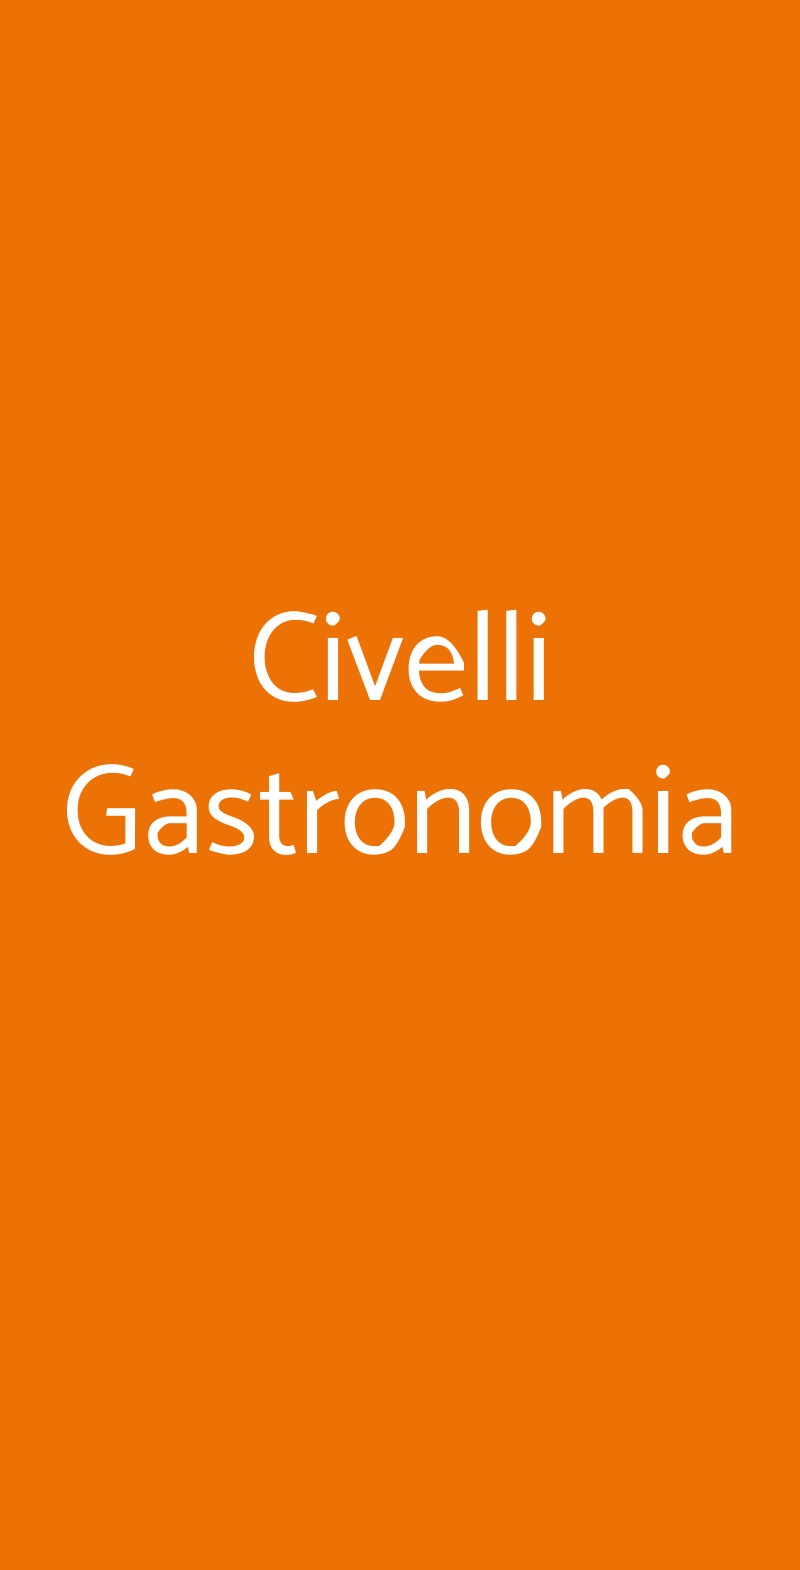 Civelli Gastronomia Milano menù 1 pagina